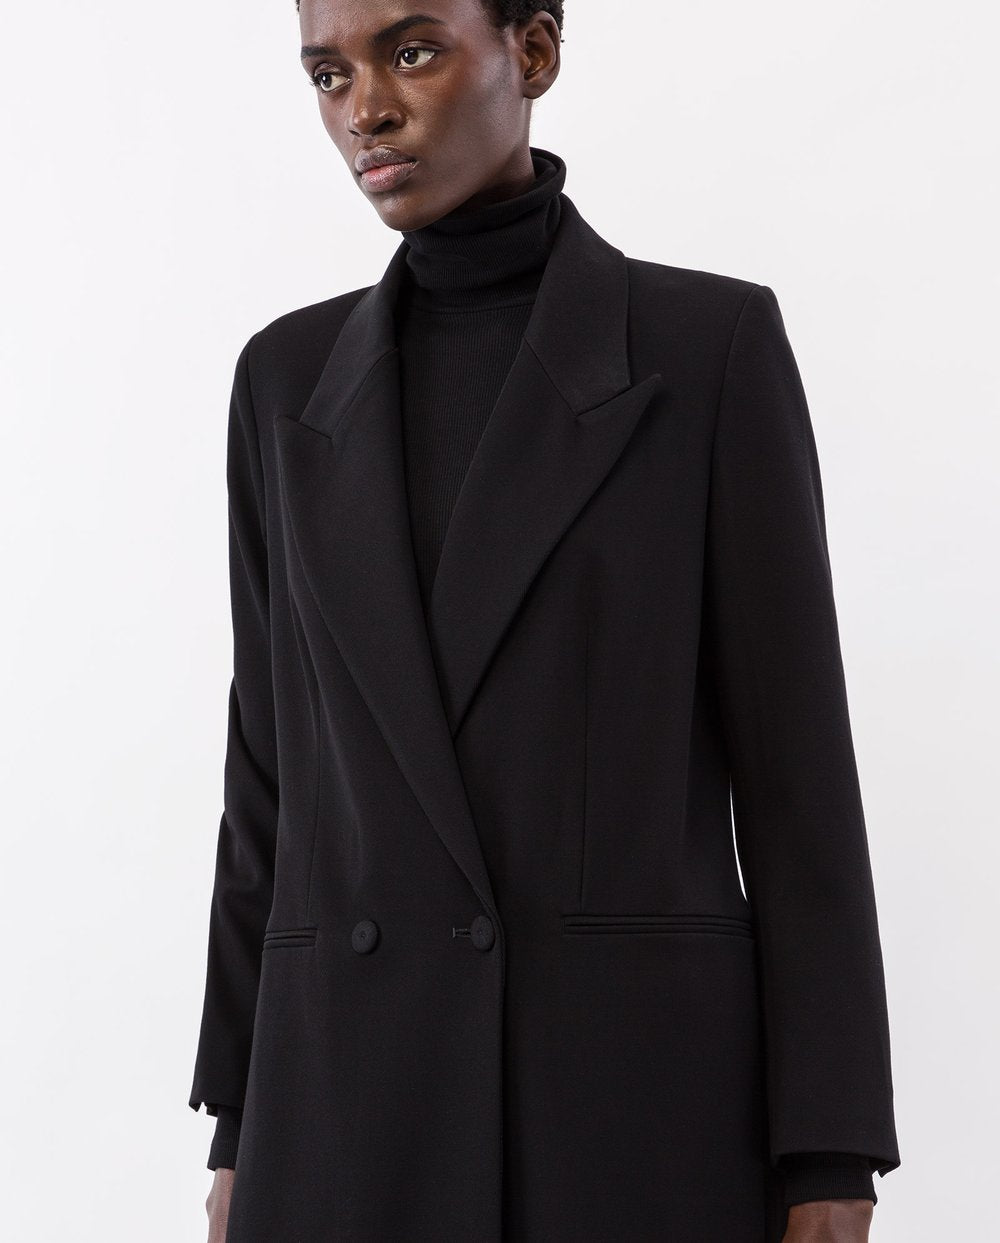 Maxi blazer coat in black